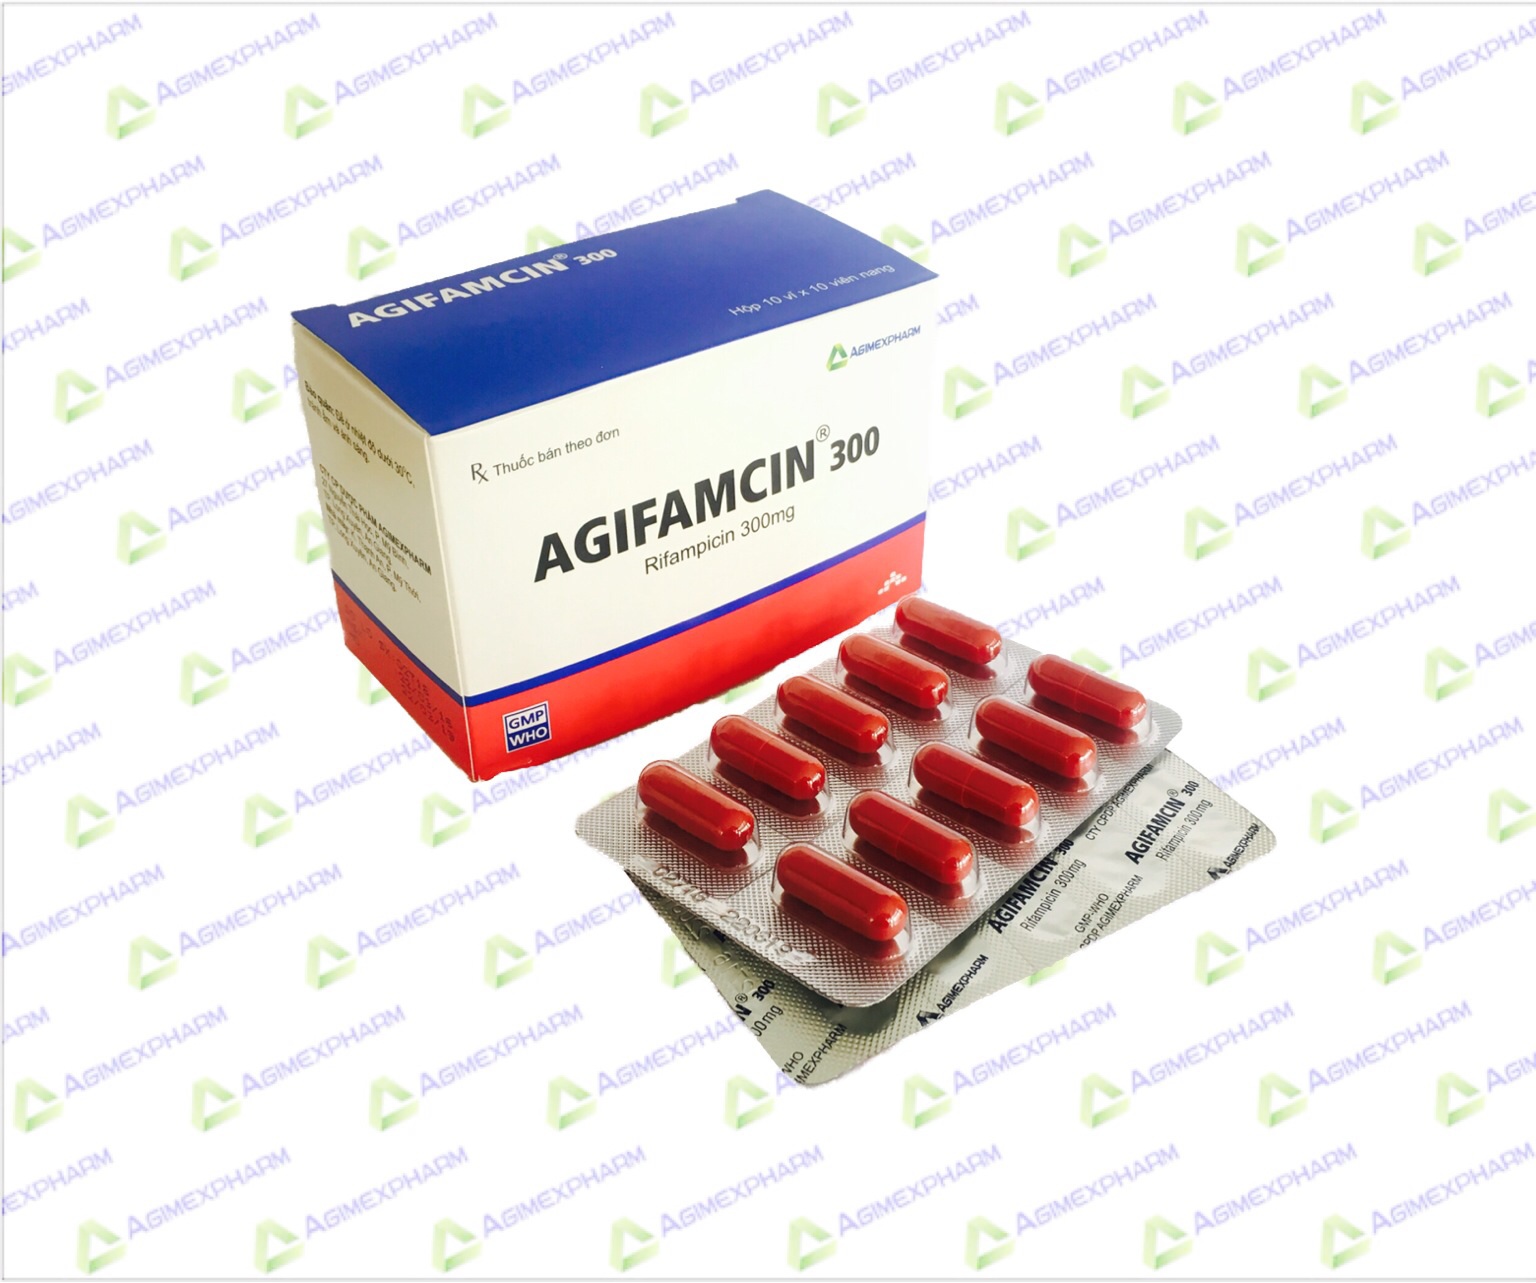 Thuốc Agifamcin 300 là thuốc kháng nấm, ký sinh trùng